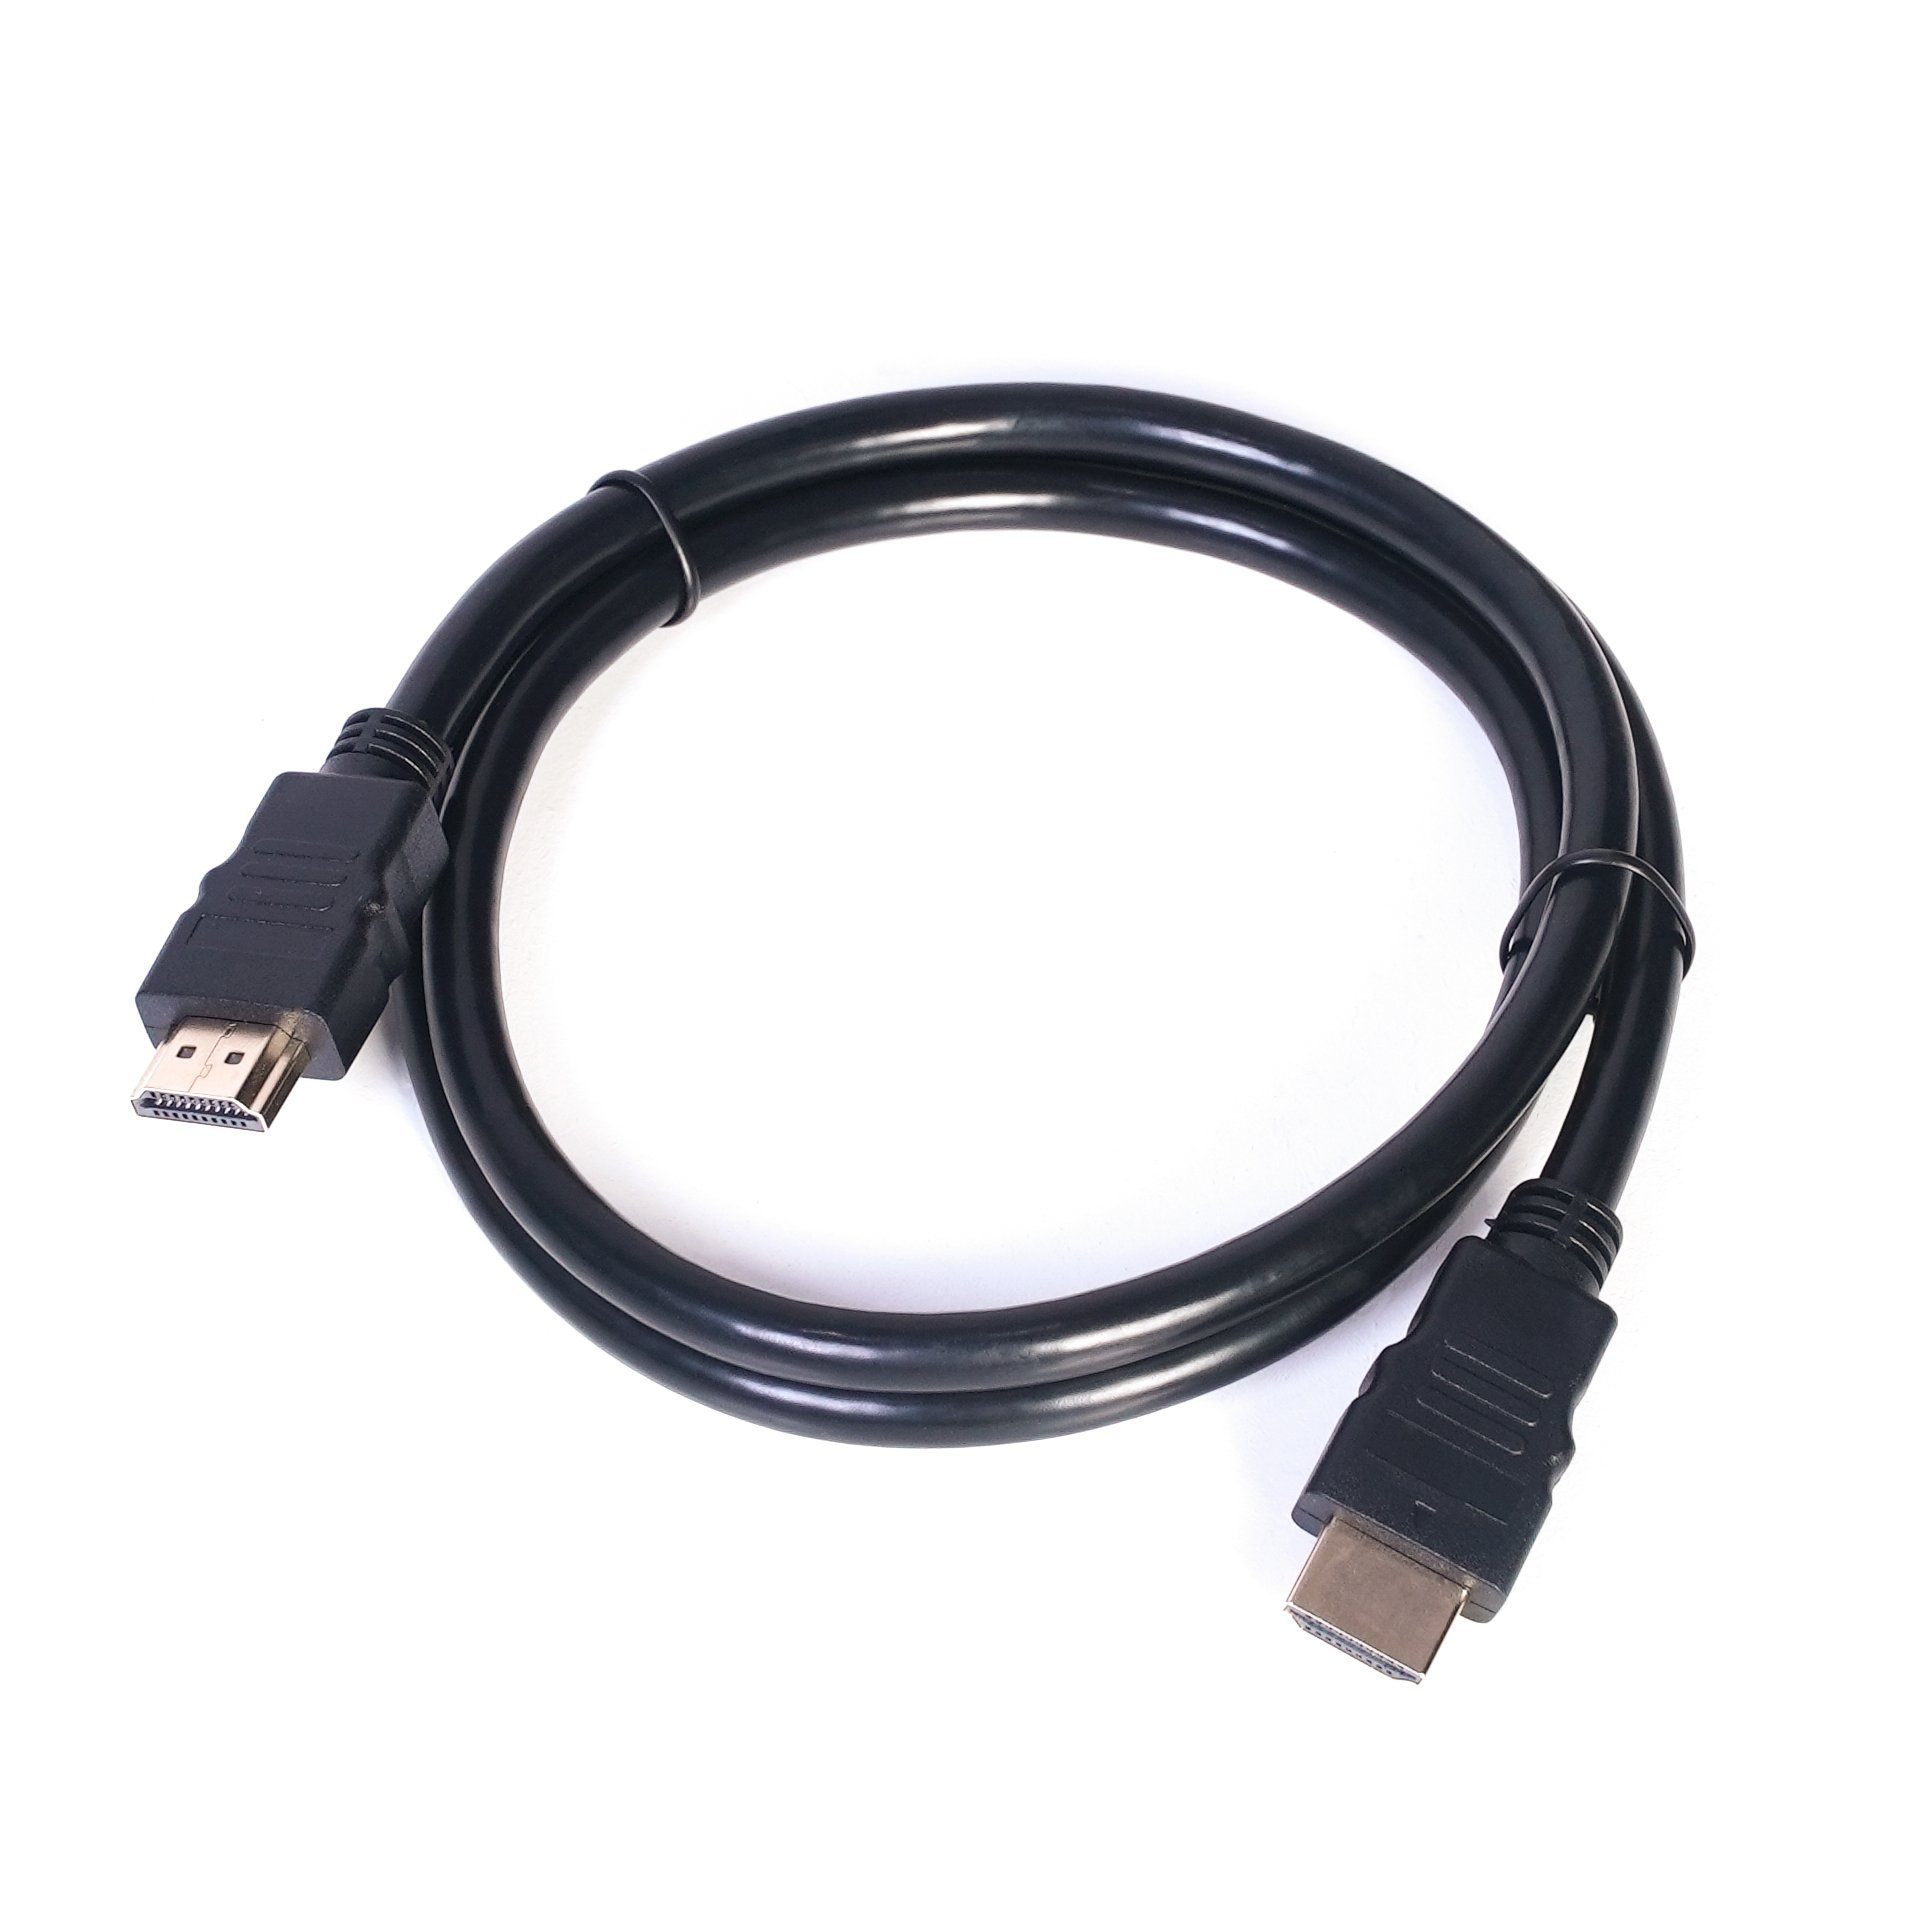 Cable HDMI a HDMI de 1,8 mts 60hz 4K puntas doradas - 060168